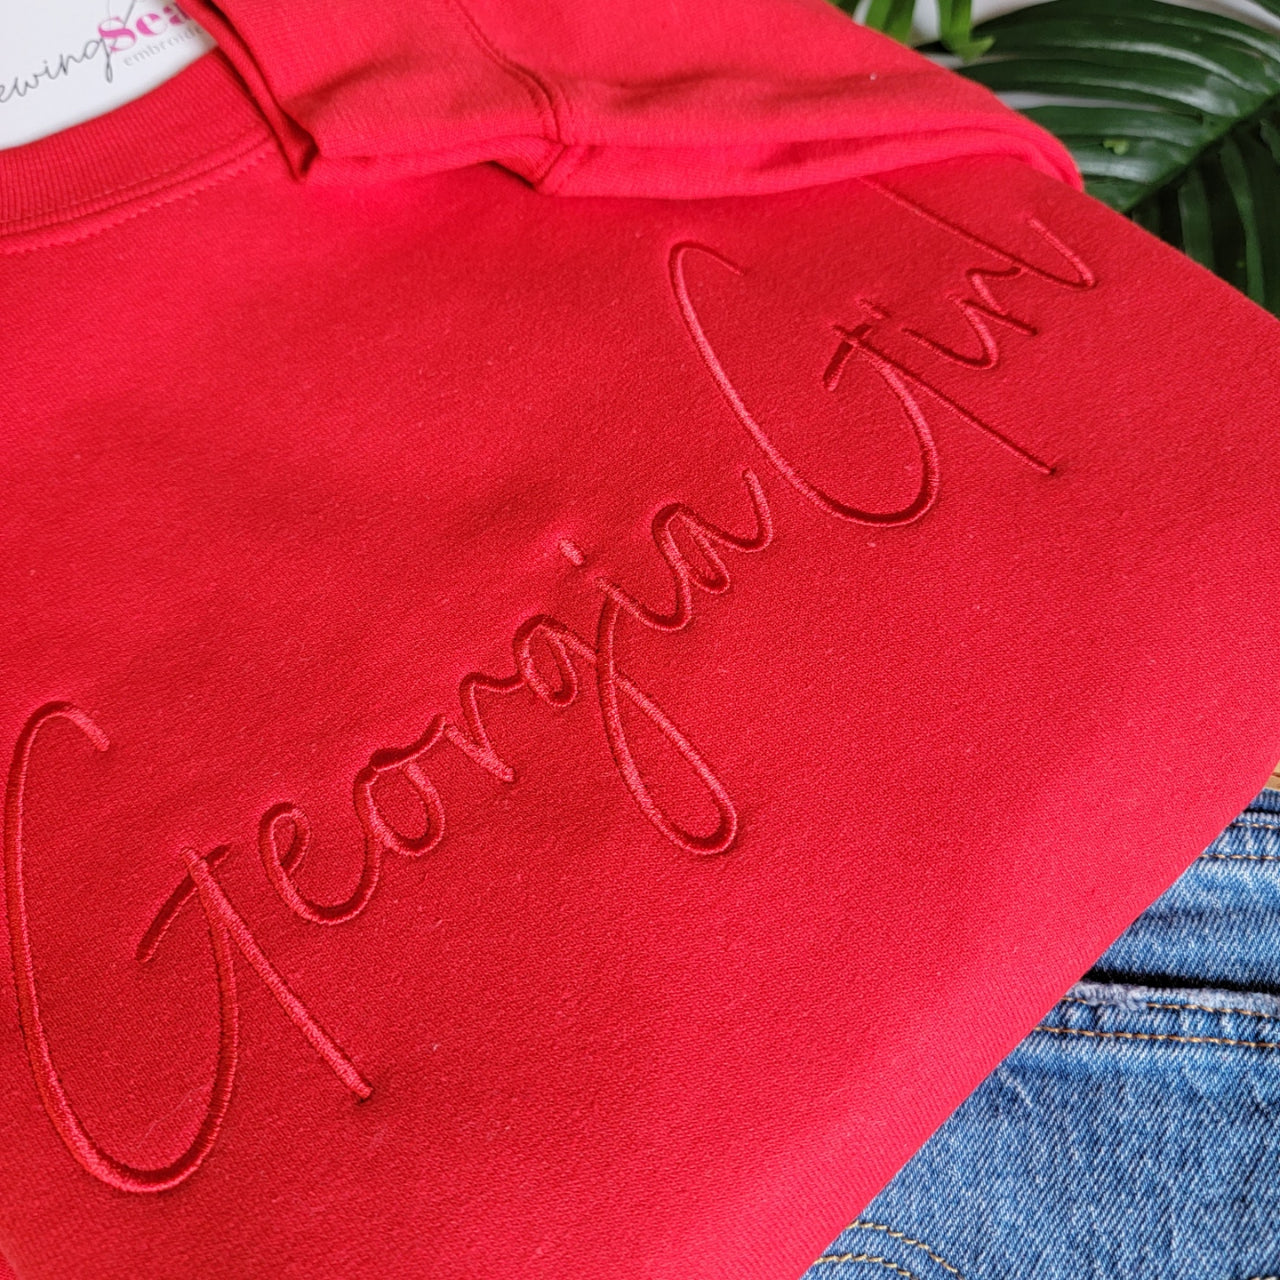 Georgia Girl Sweatshirt